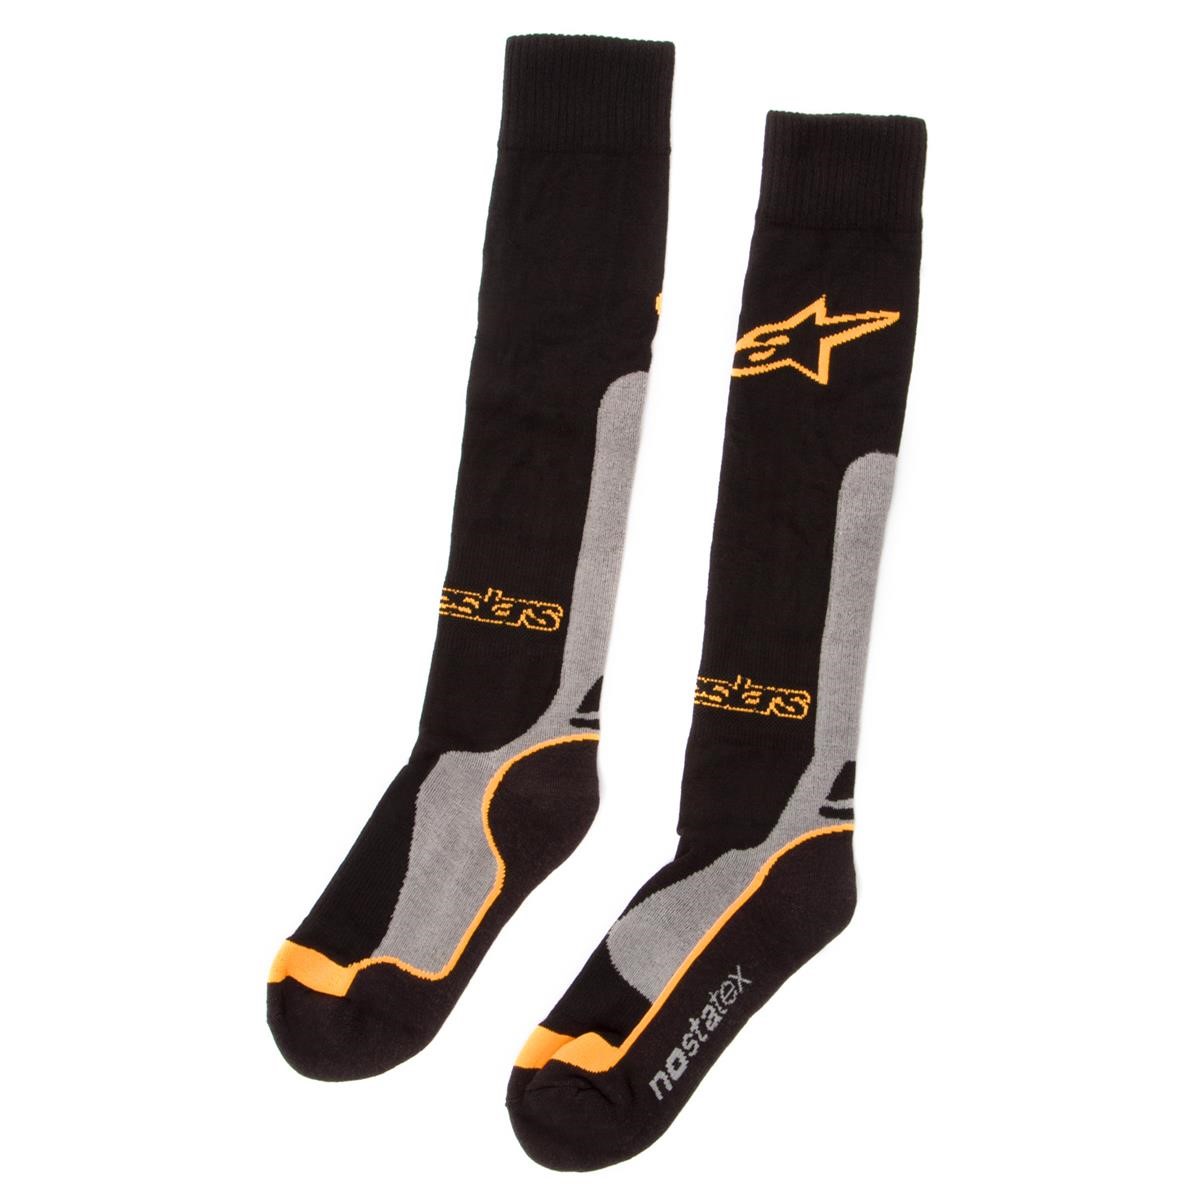 Alpinestars Socken Pro Coolmax Schwarz/Grau/Orange